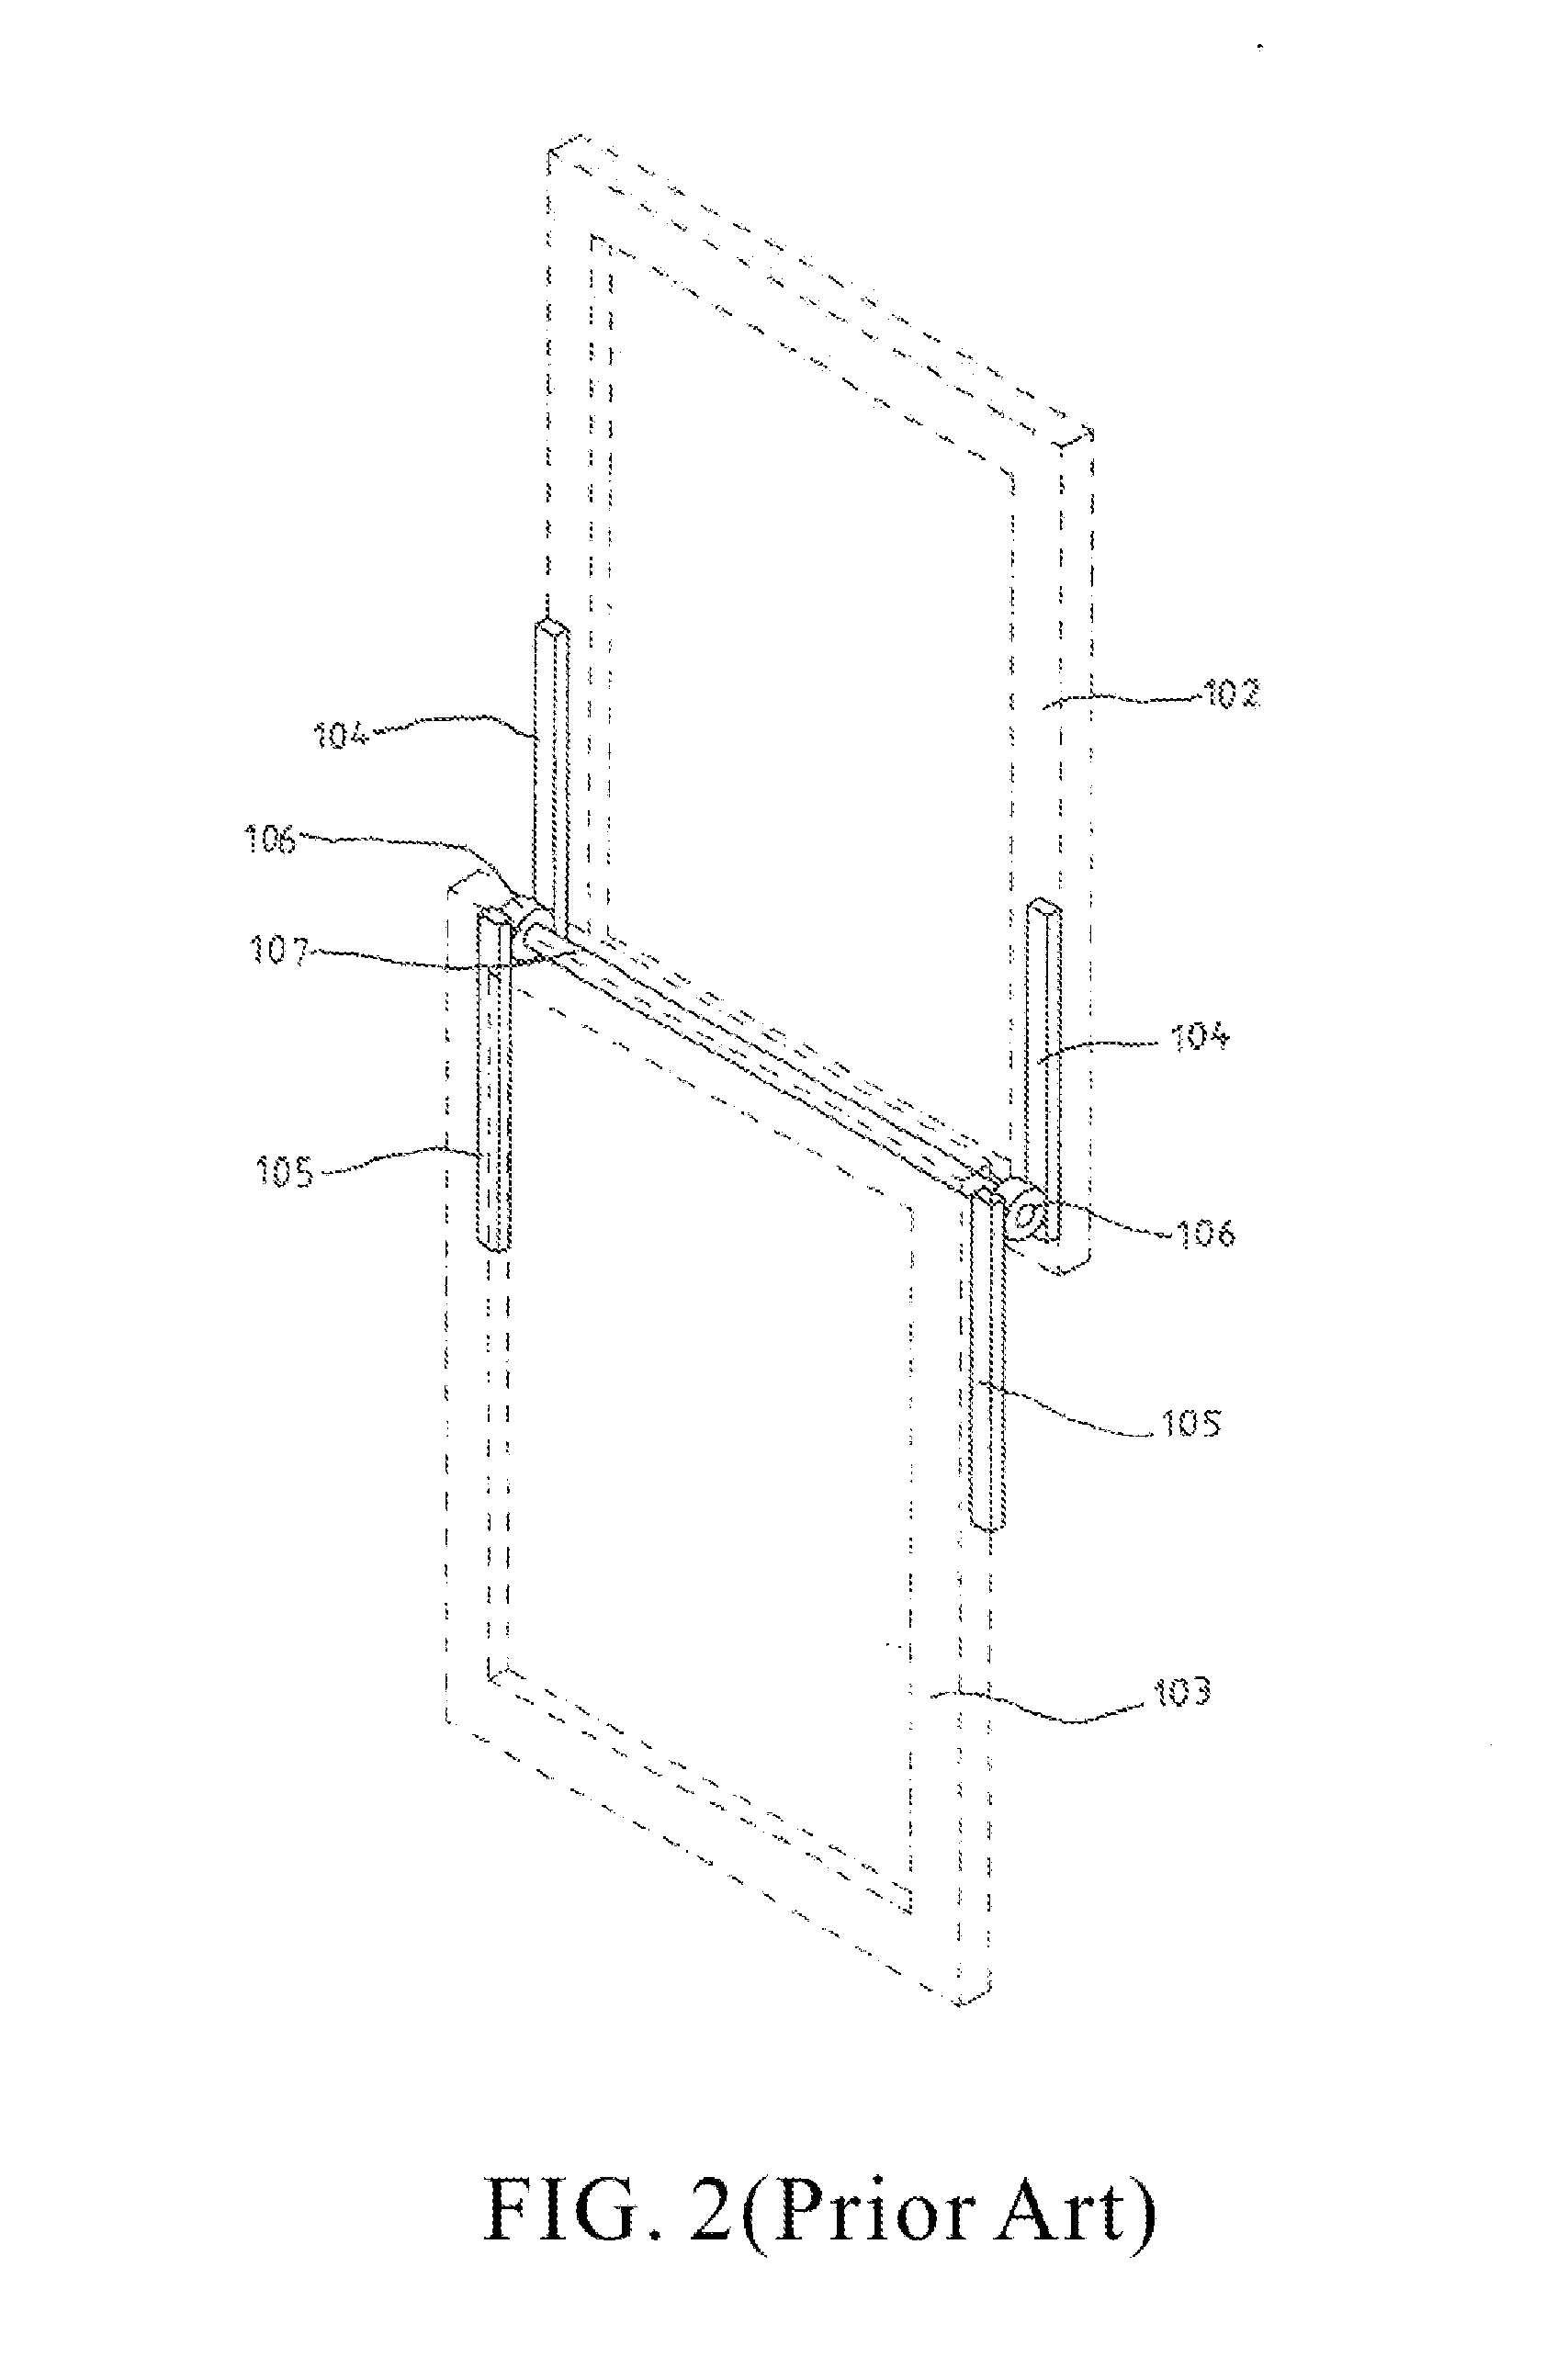 Linking-Up Ventilation Door/Window Panel Structure